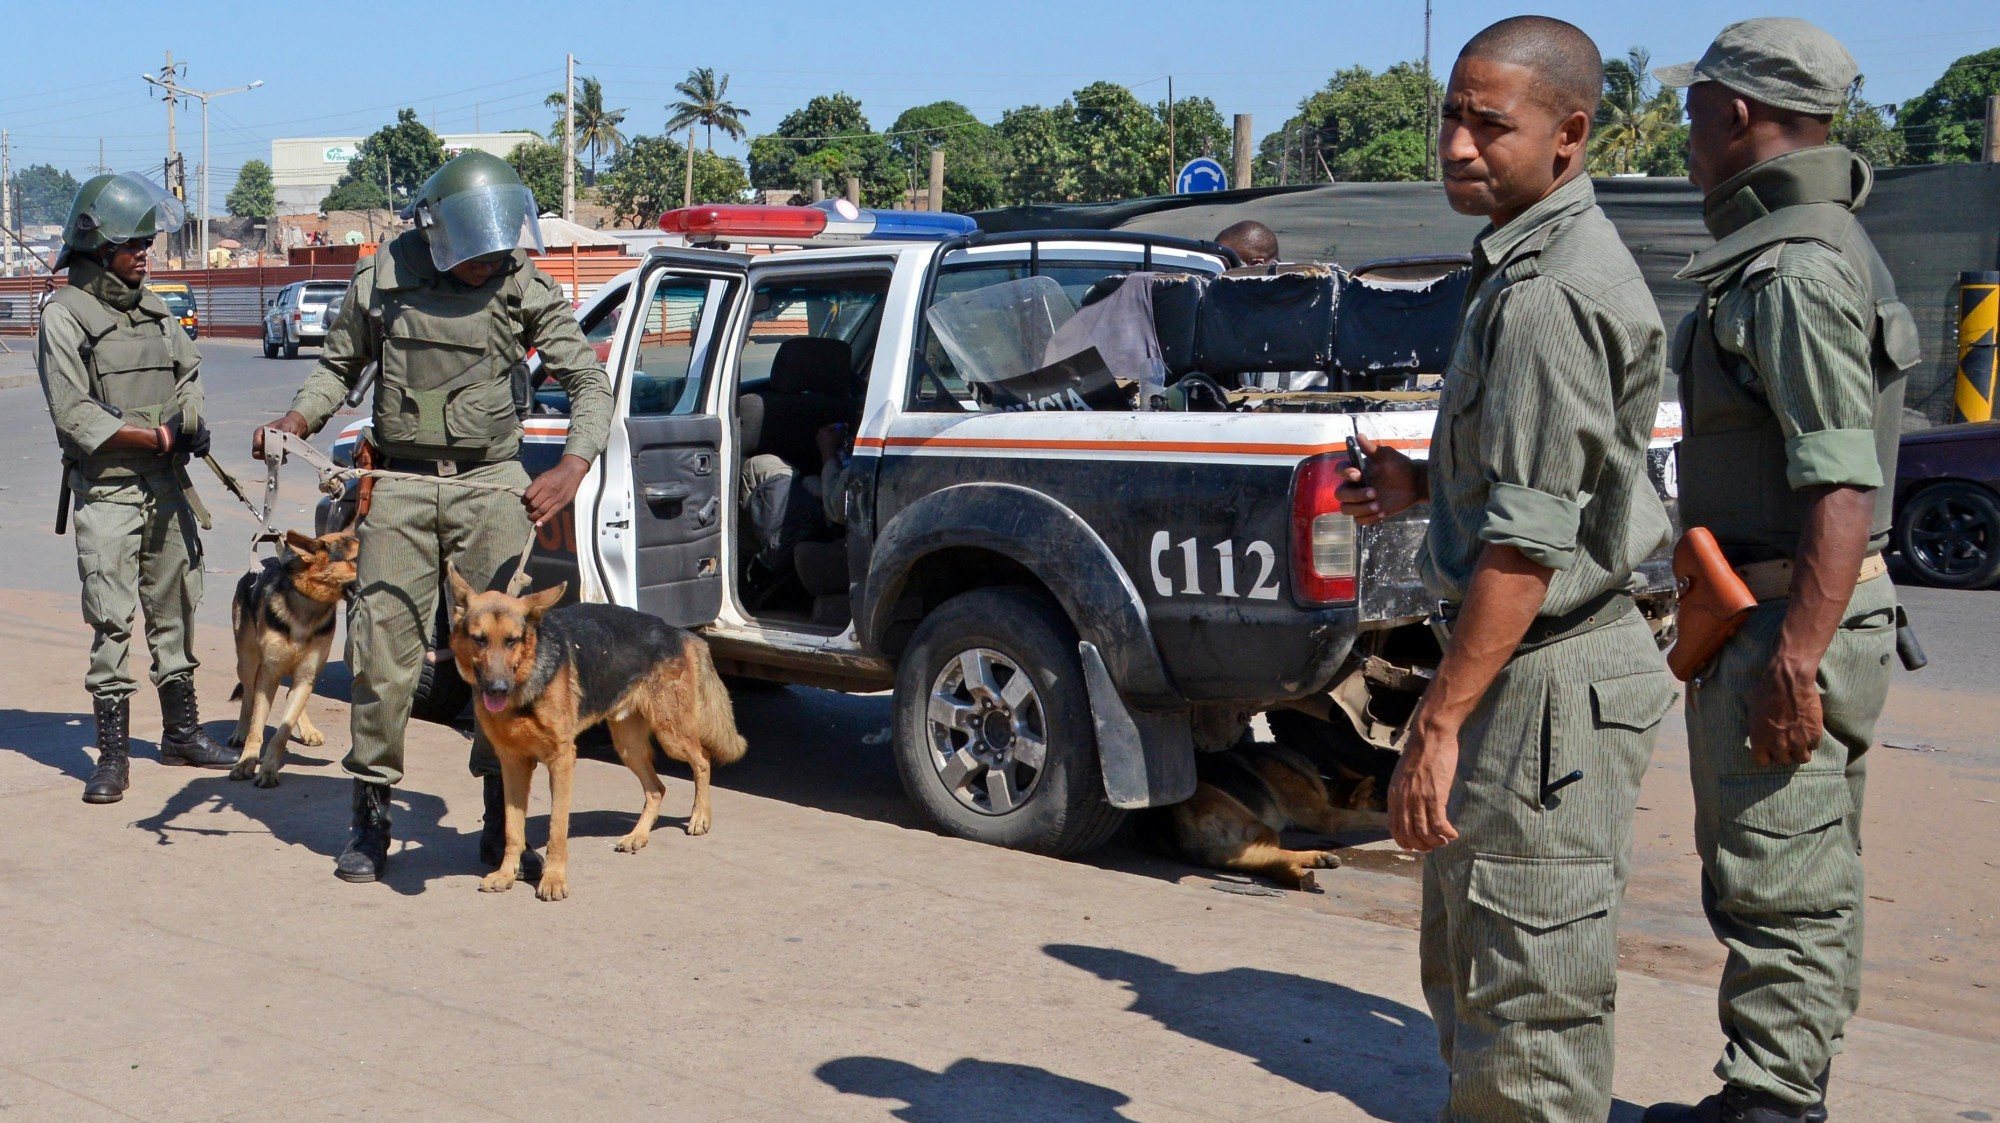 A nova vaga de violência surge depois de as Forças de Defesa e Segurança moçambicanas terem tomado uma base de terroristas no distrito de Ancuabe, segundo Filipe Nyusi